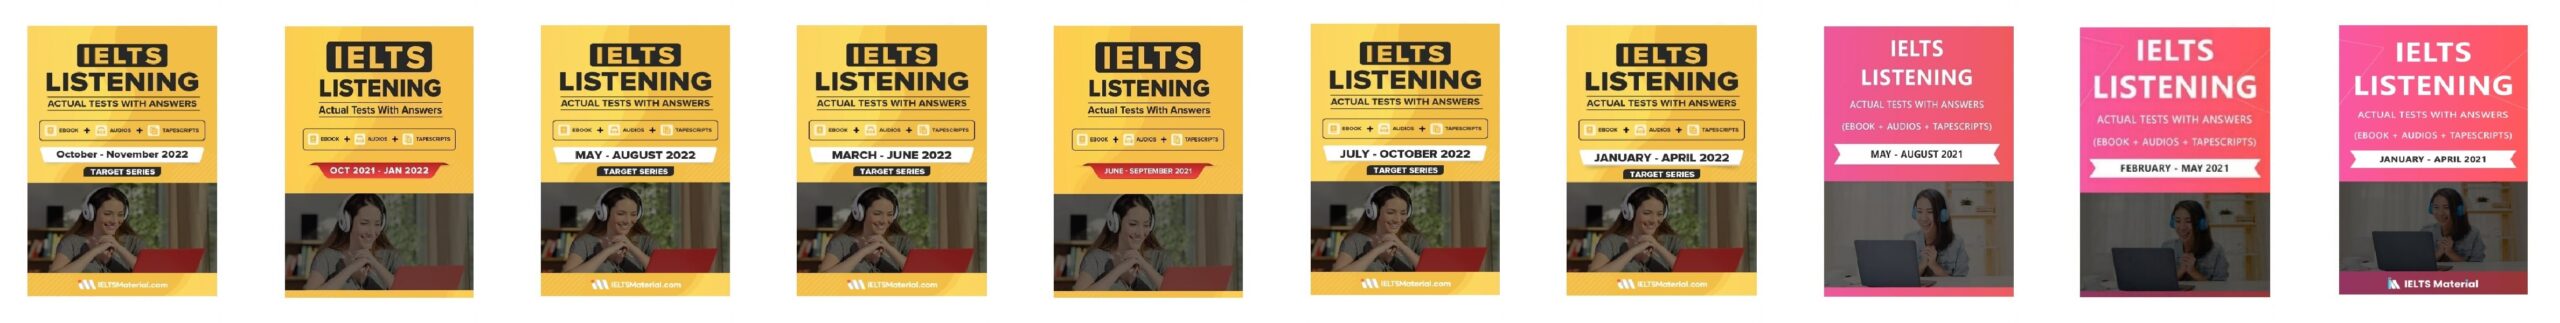 کتاب آزمون واقعی آیلتس | فروشگاه اینترنتی کتاب آیلتس | IELTS LISTENING ACTUAL TESTS | مجموعه کتاب زبان های آیلتس لیسنینگ اکچوال تست